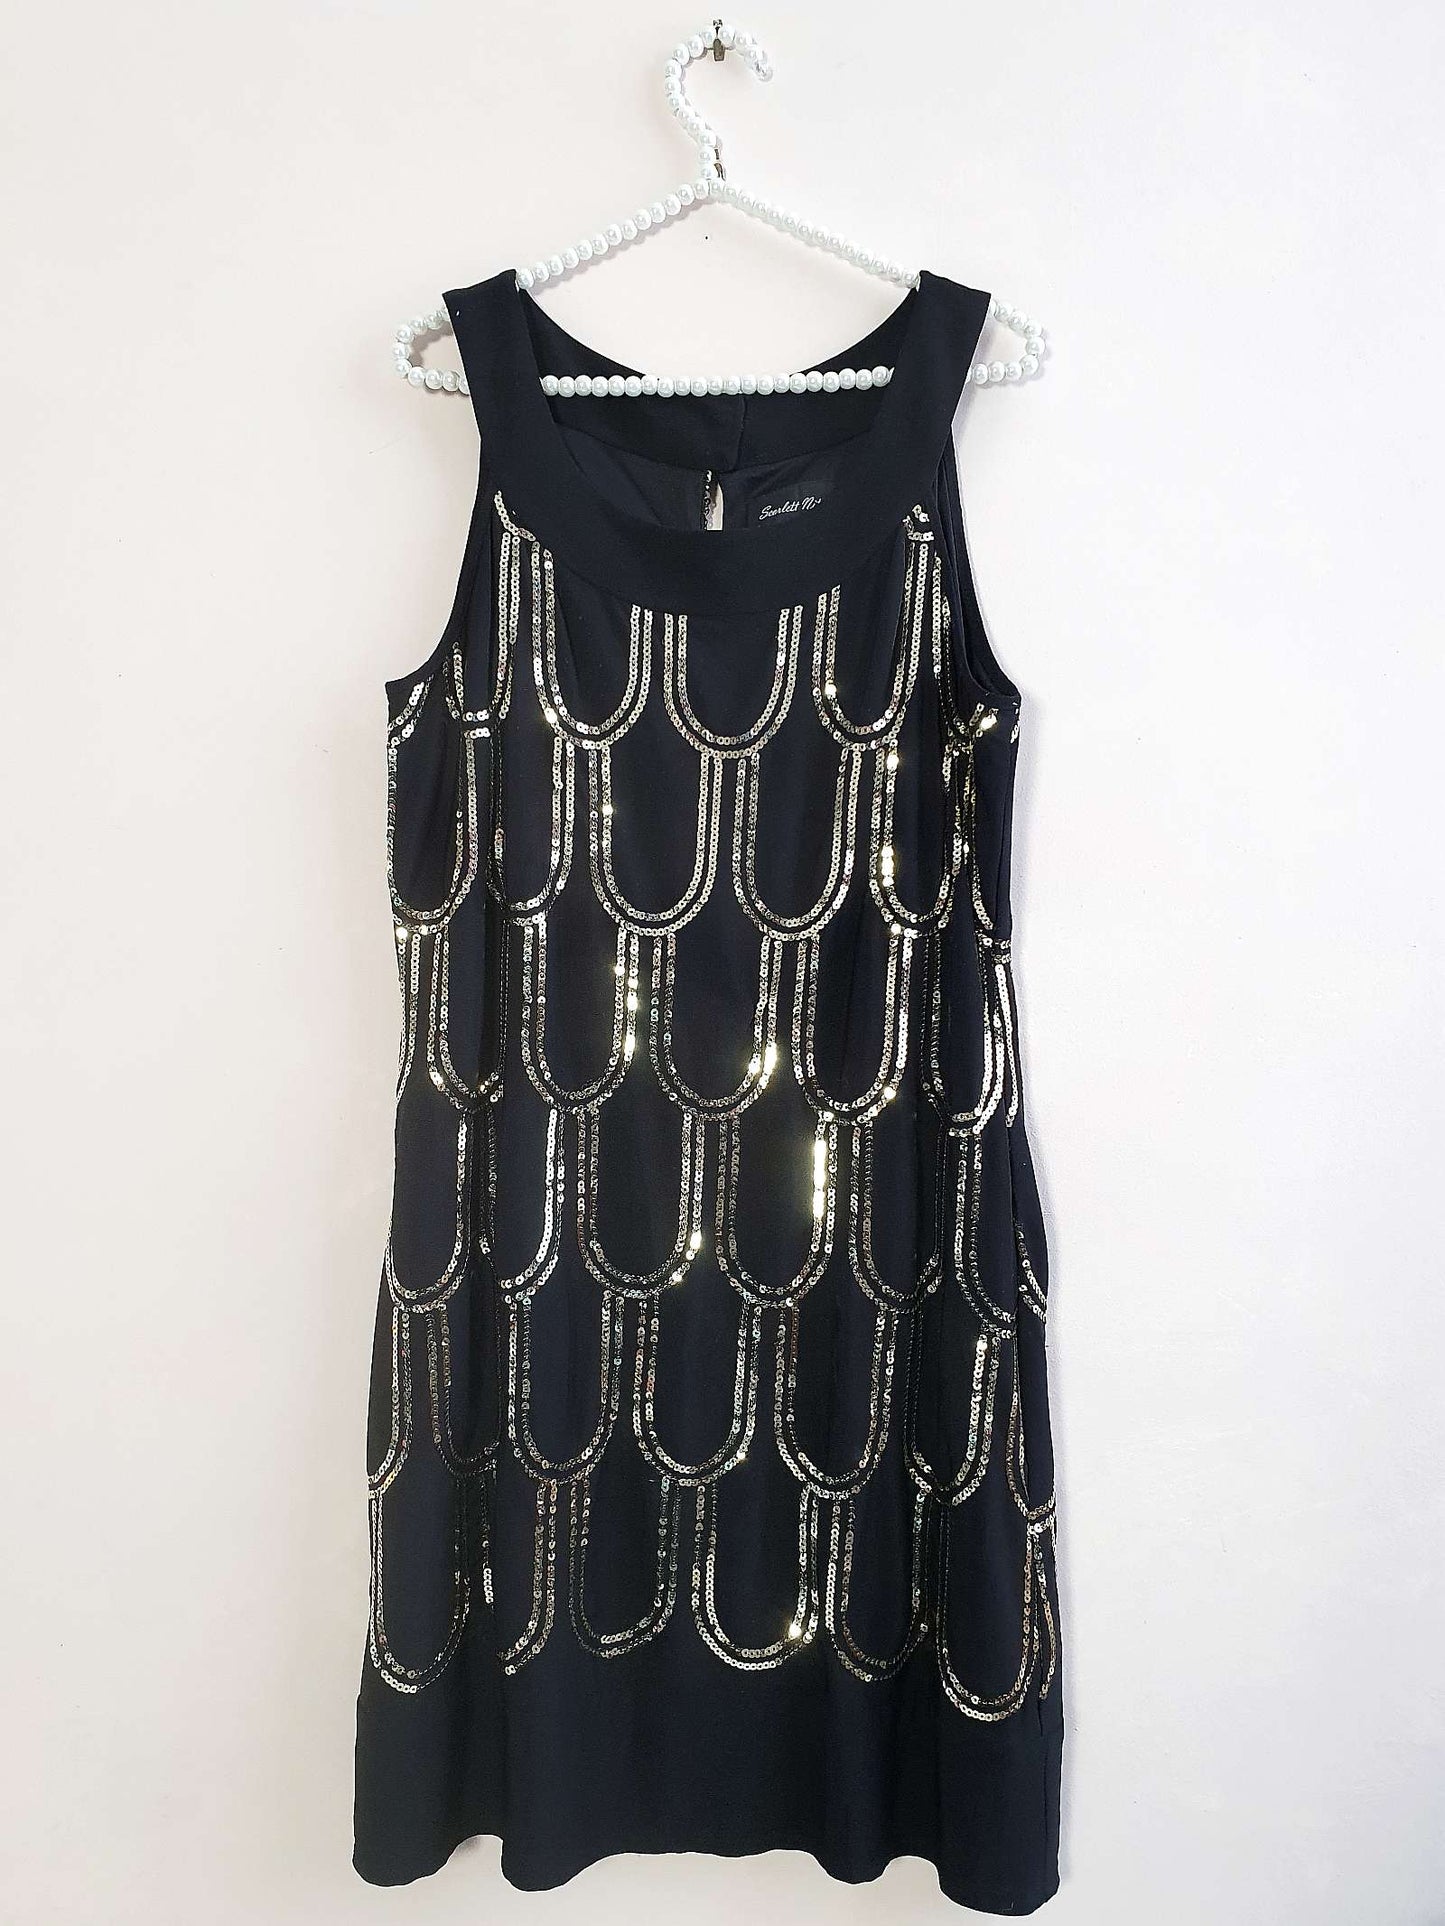 Vintage Black Party Dress Sequin Art Deco Flapper 20s Style - Size 14